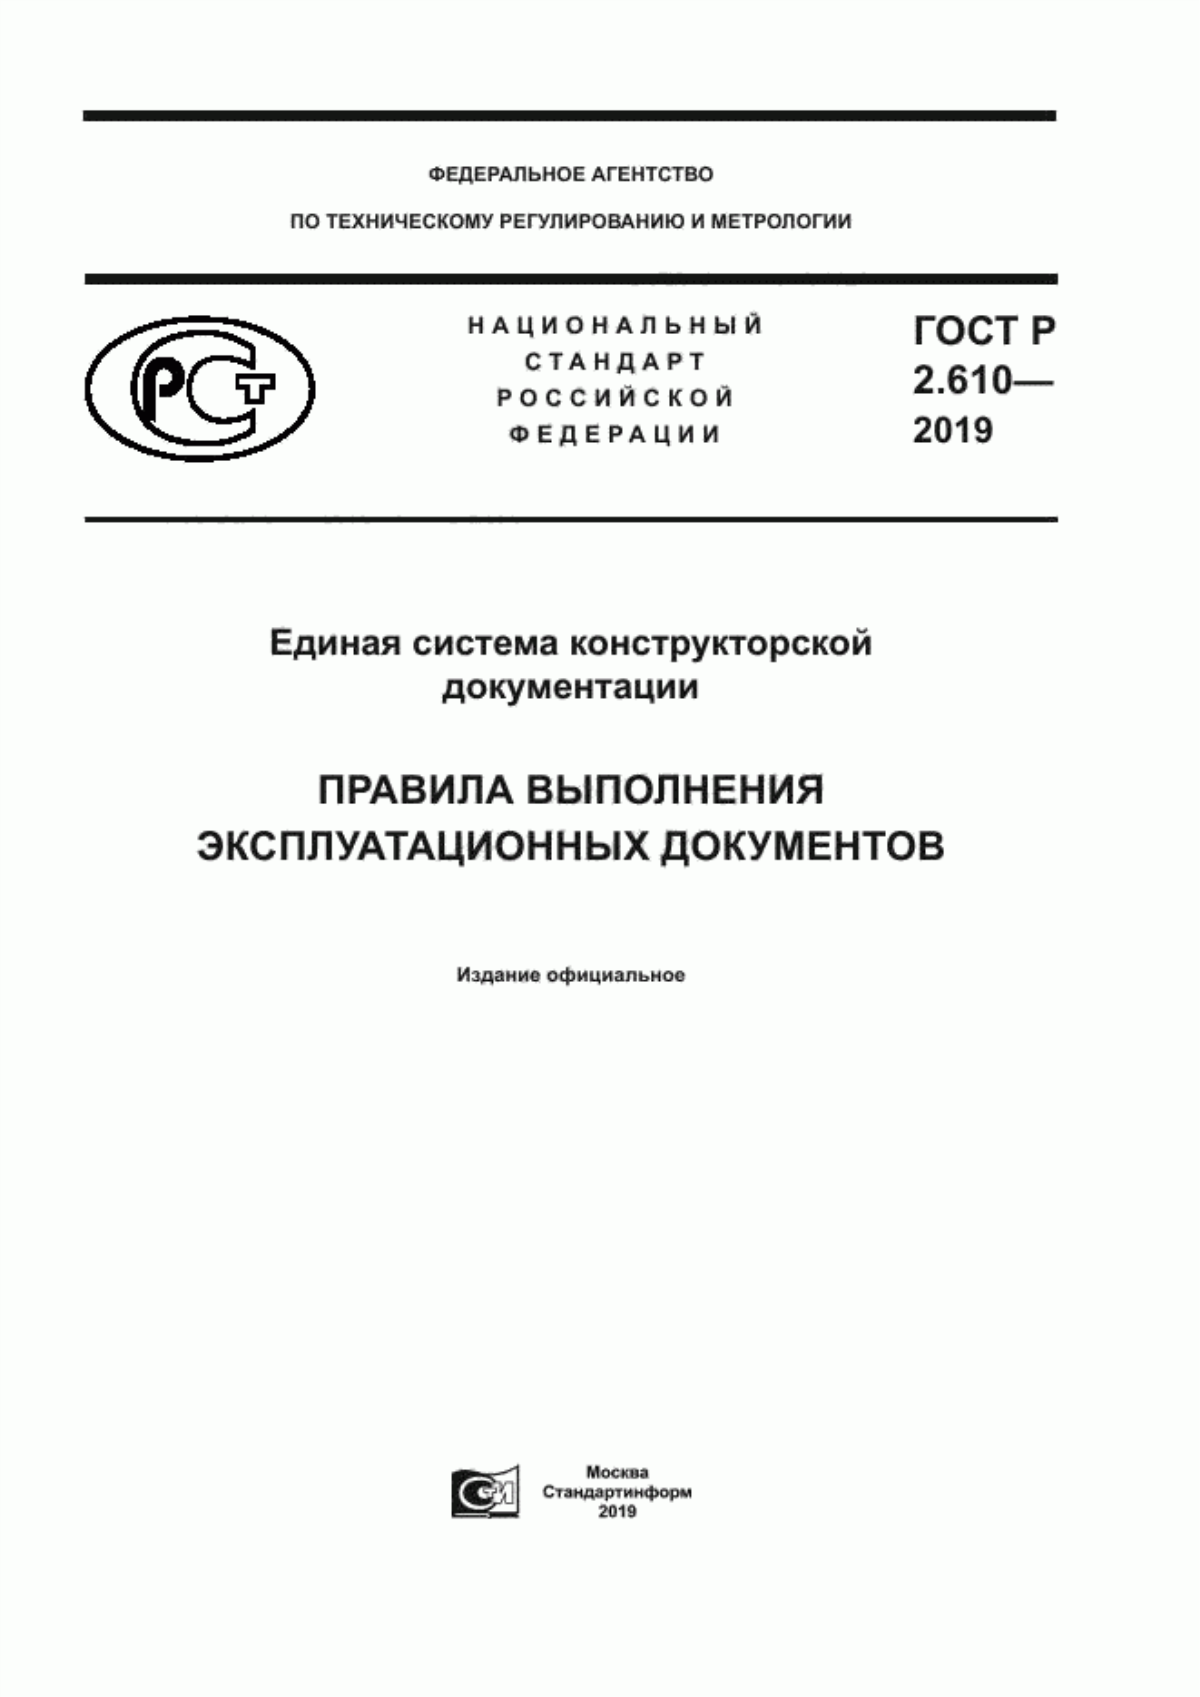 ГОСТ Р 2.610-2019 Единая система конструкторской документации. Правила выполнения эксплуатационных документов